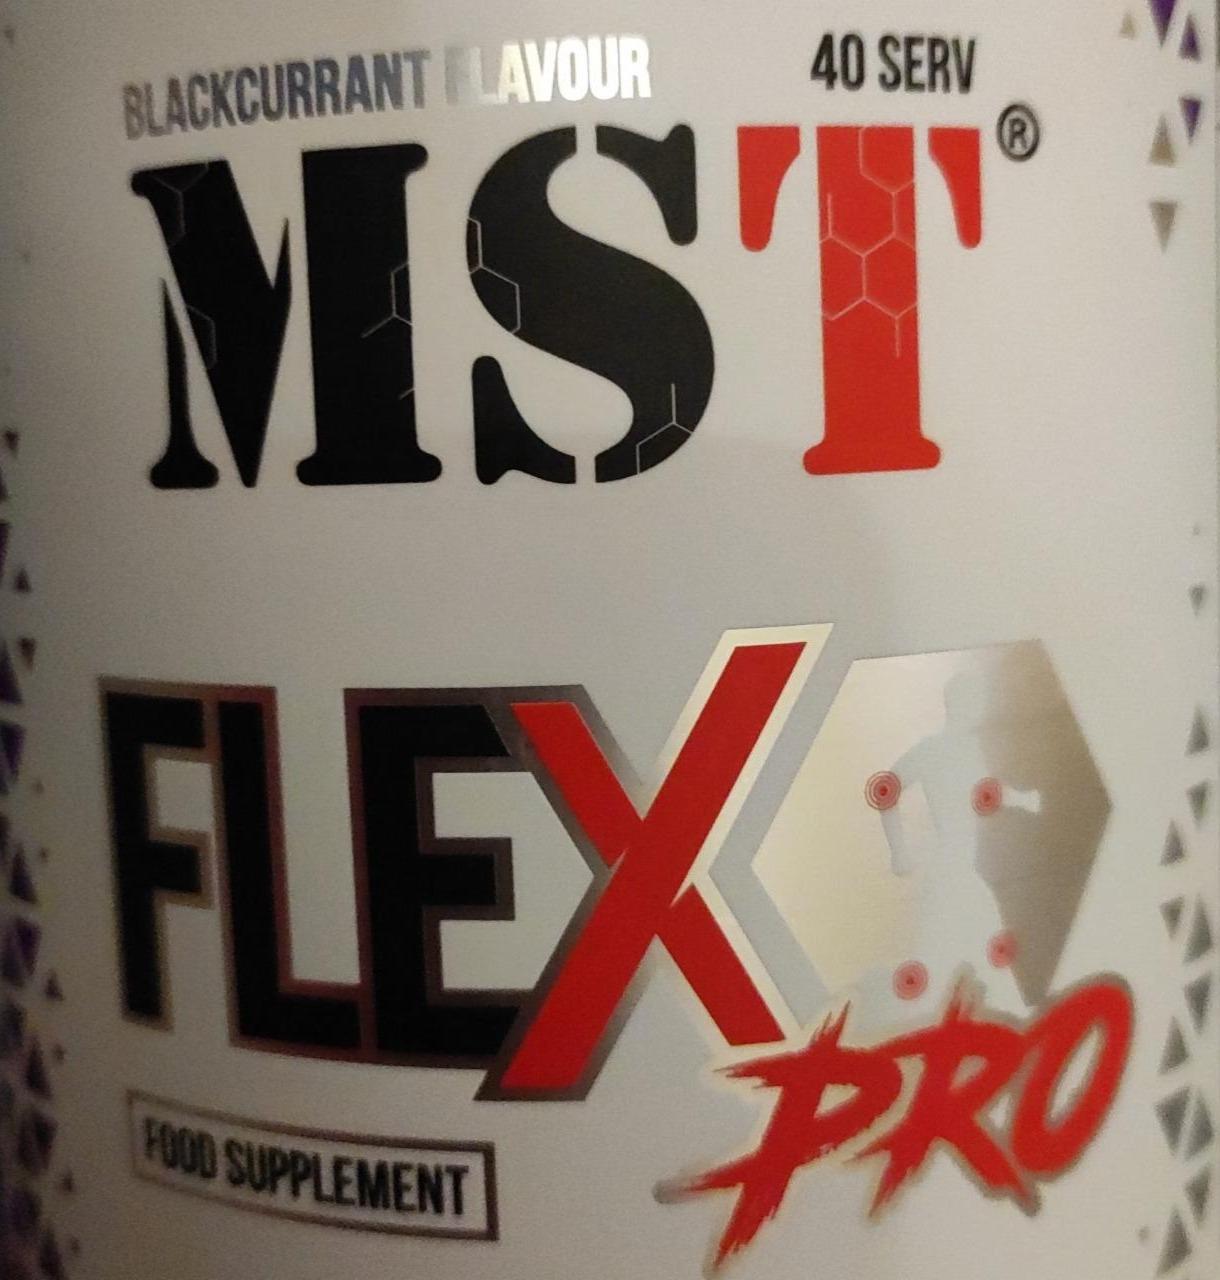 Фото - Mist Flex pro blackcurrant flavour MST